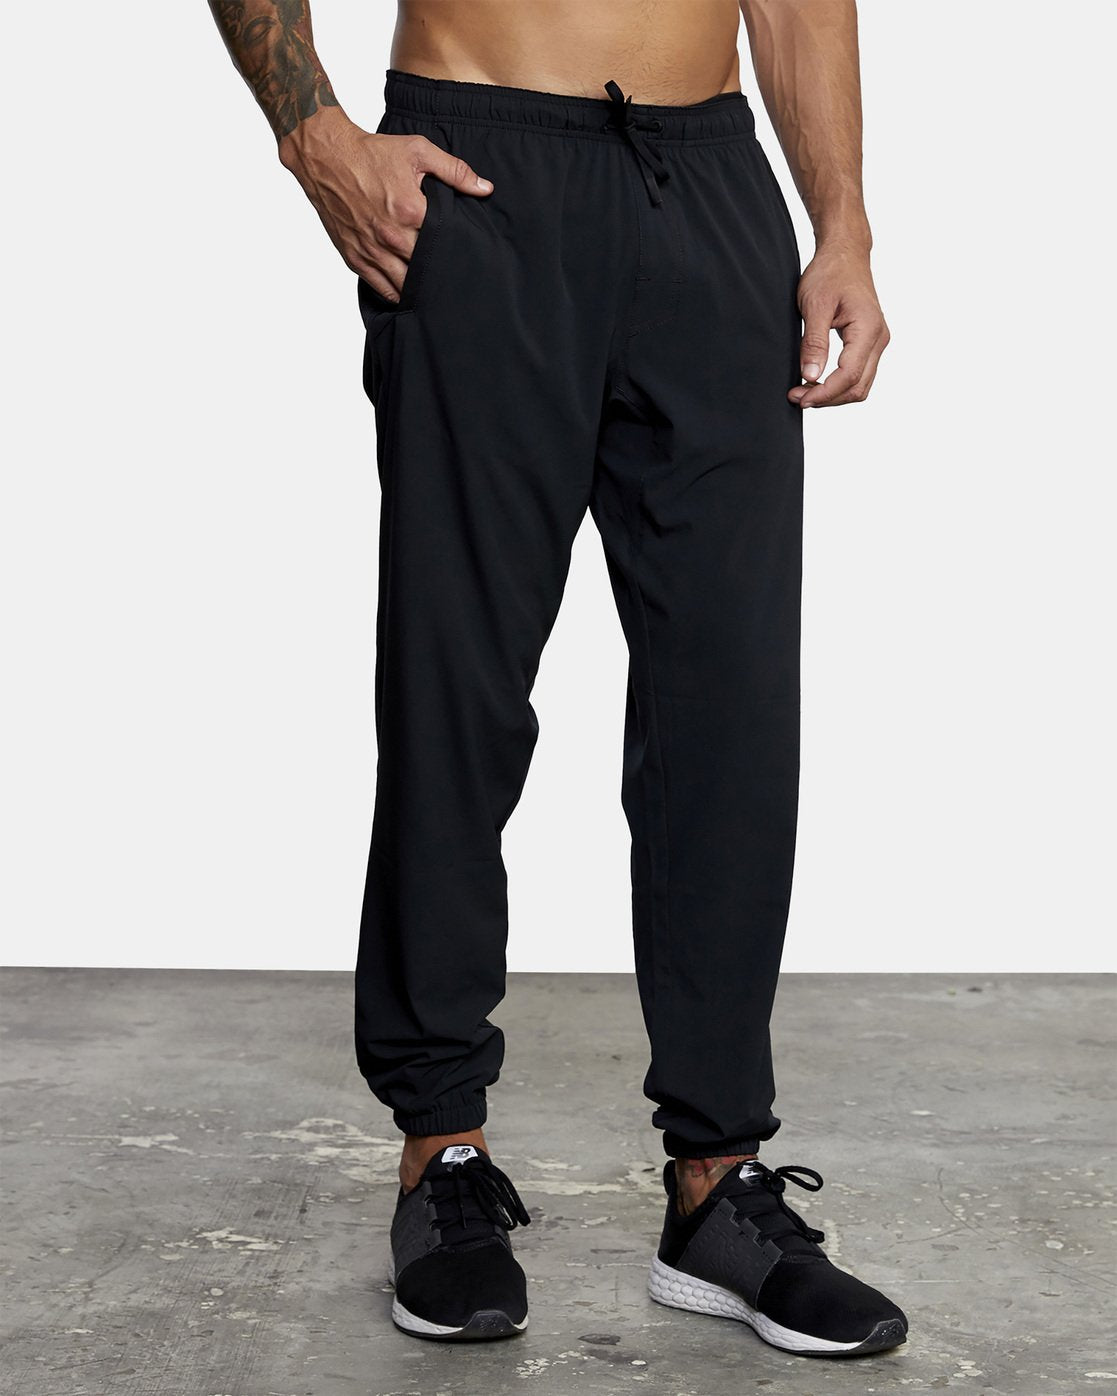 Men's Nike Sportswear Club Fleece Cargo Jogger Pants| Finish Line